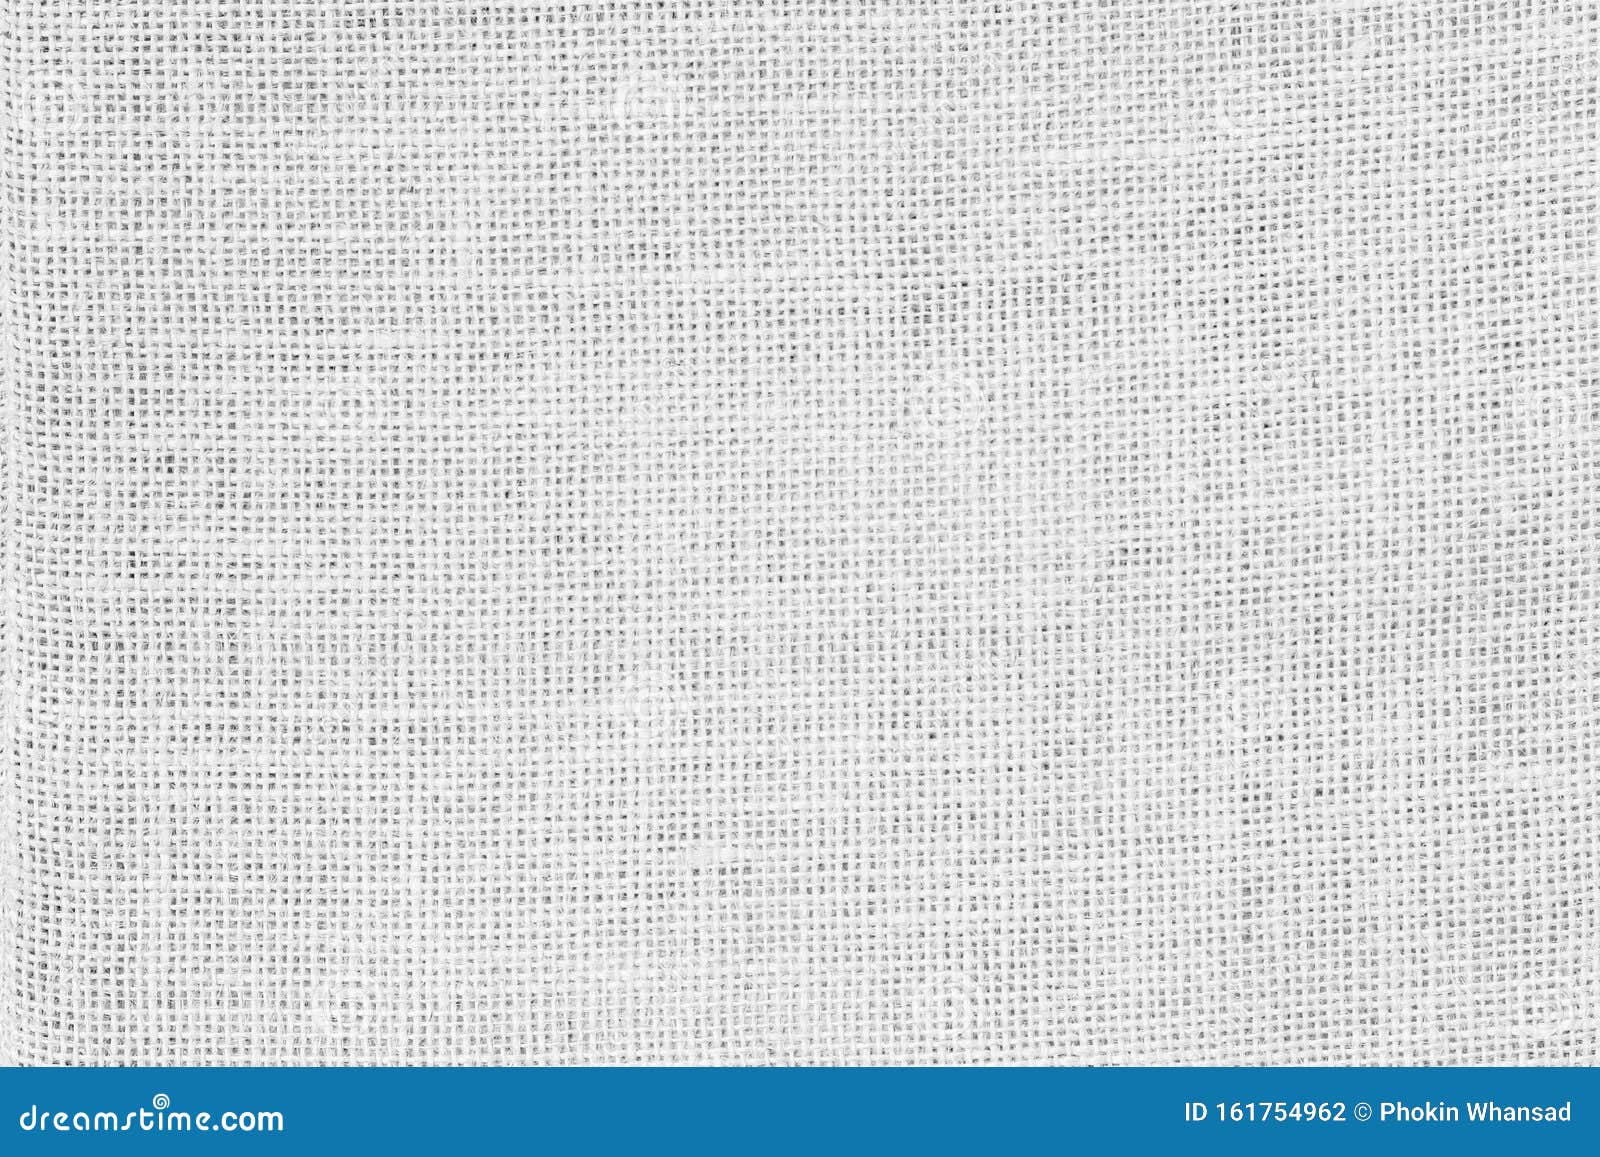 白麻绳纹理背景毛布或毛毯瓦尔亚麻壁纸天然质朴的萨克布帆布织物质感库存照片 图片包括有详细资料 国界的